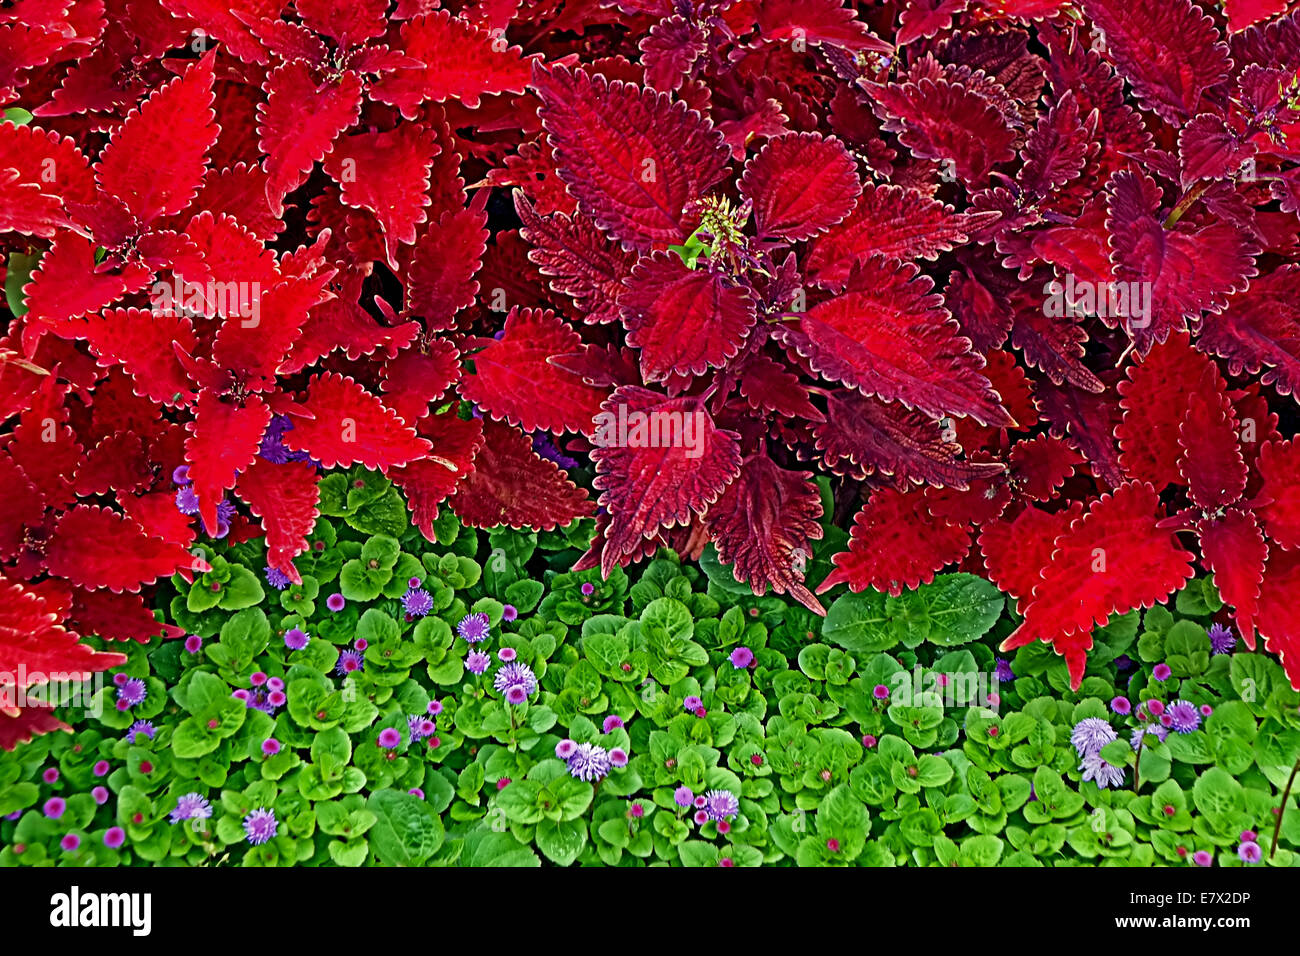 Fondo con plantas ornamentales, en color rojo y verde. Foto de stock